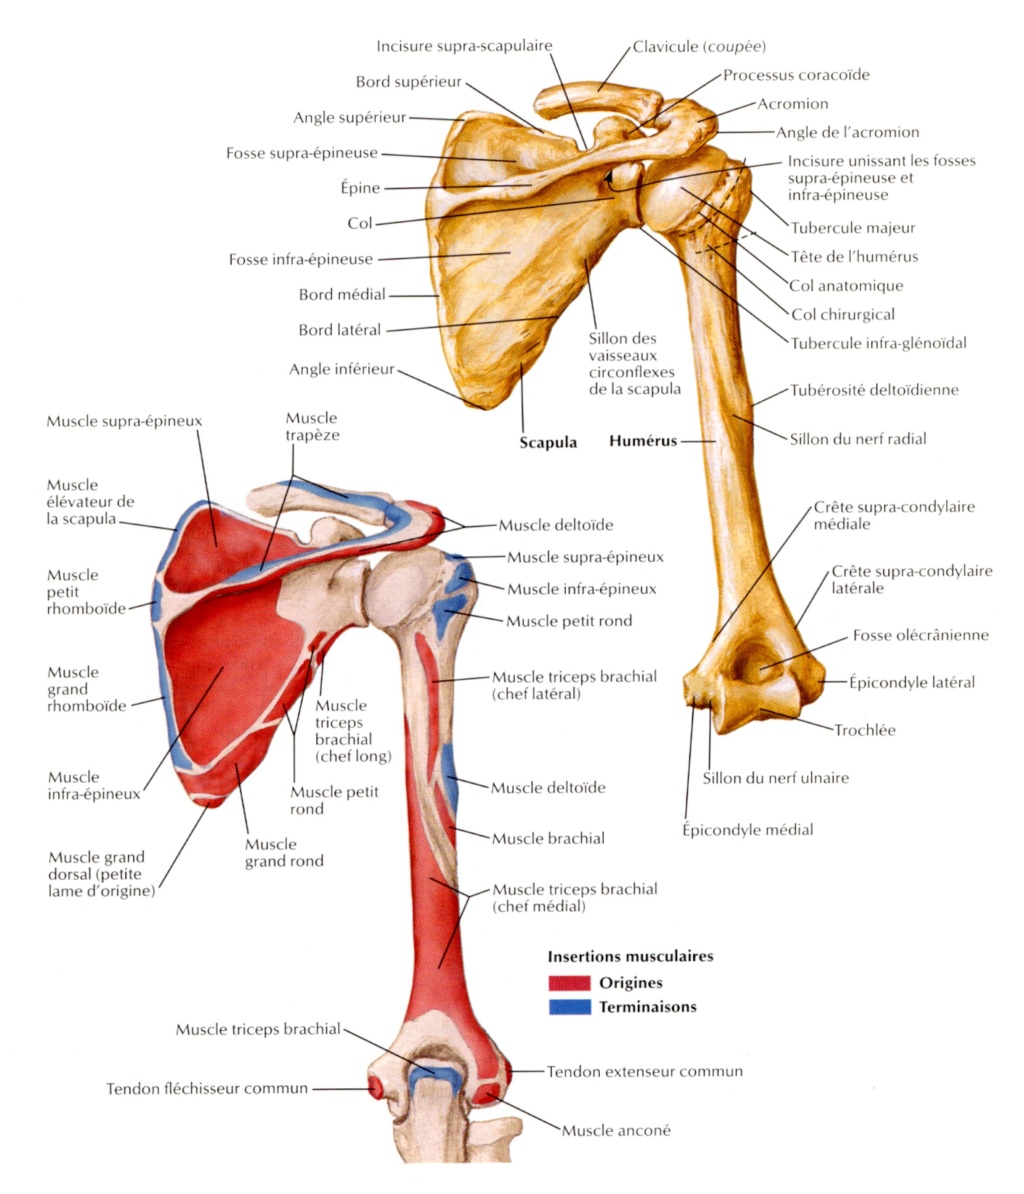 Col Anatomique et Col de l'humérus Fig39310